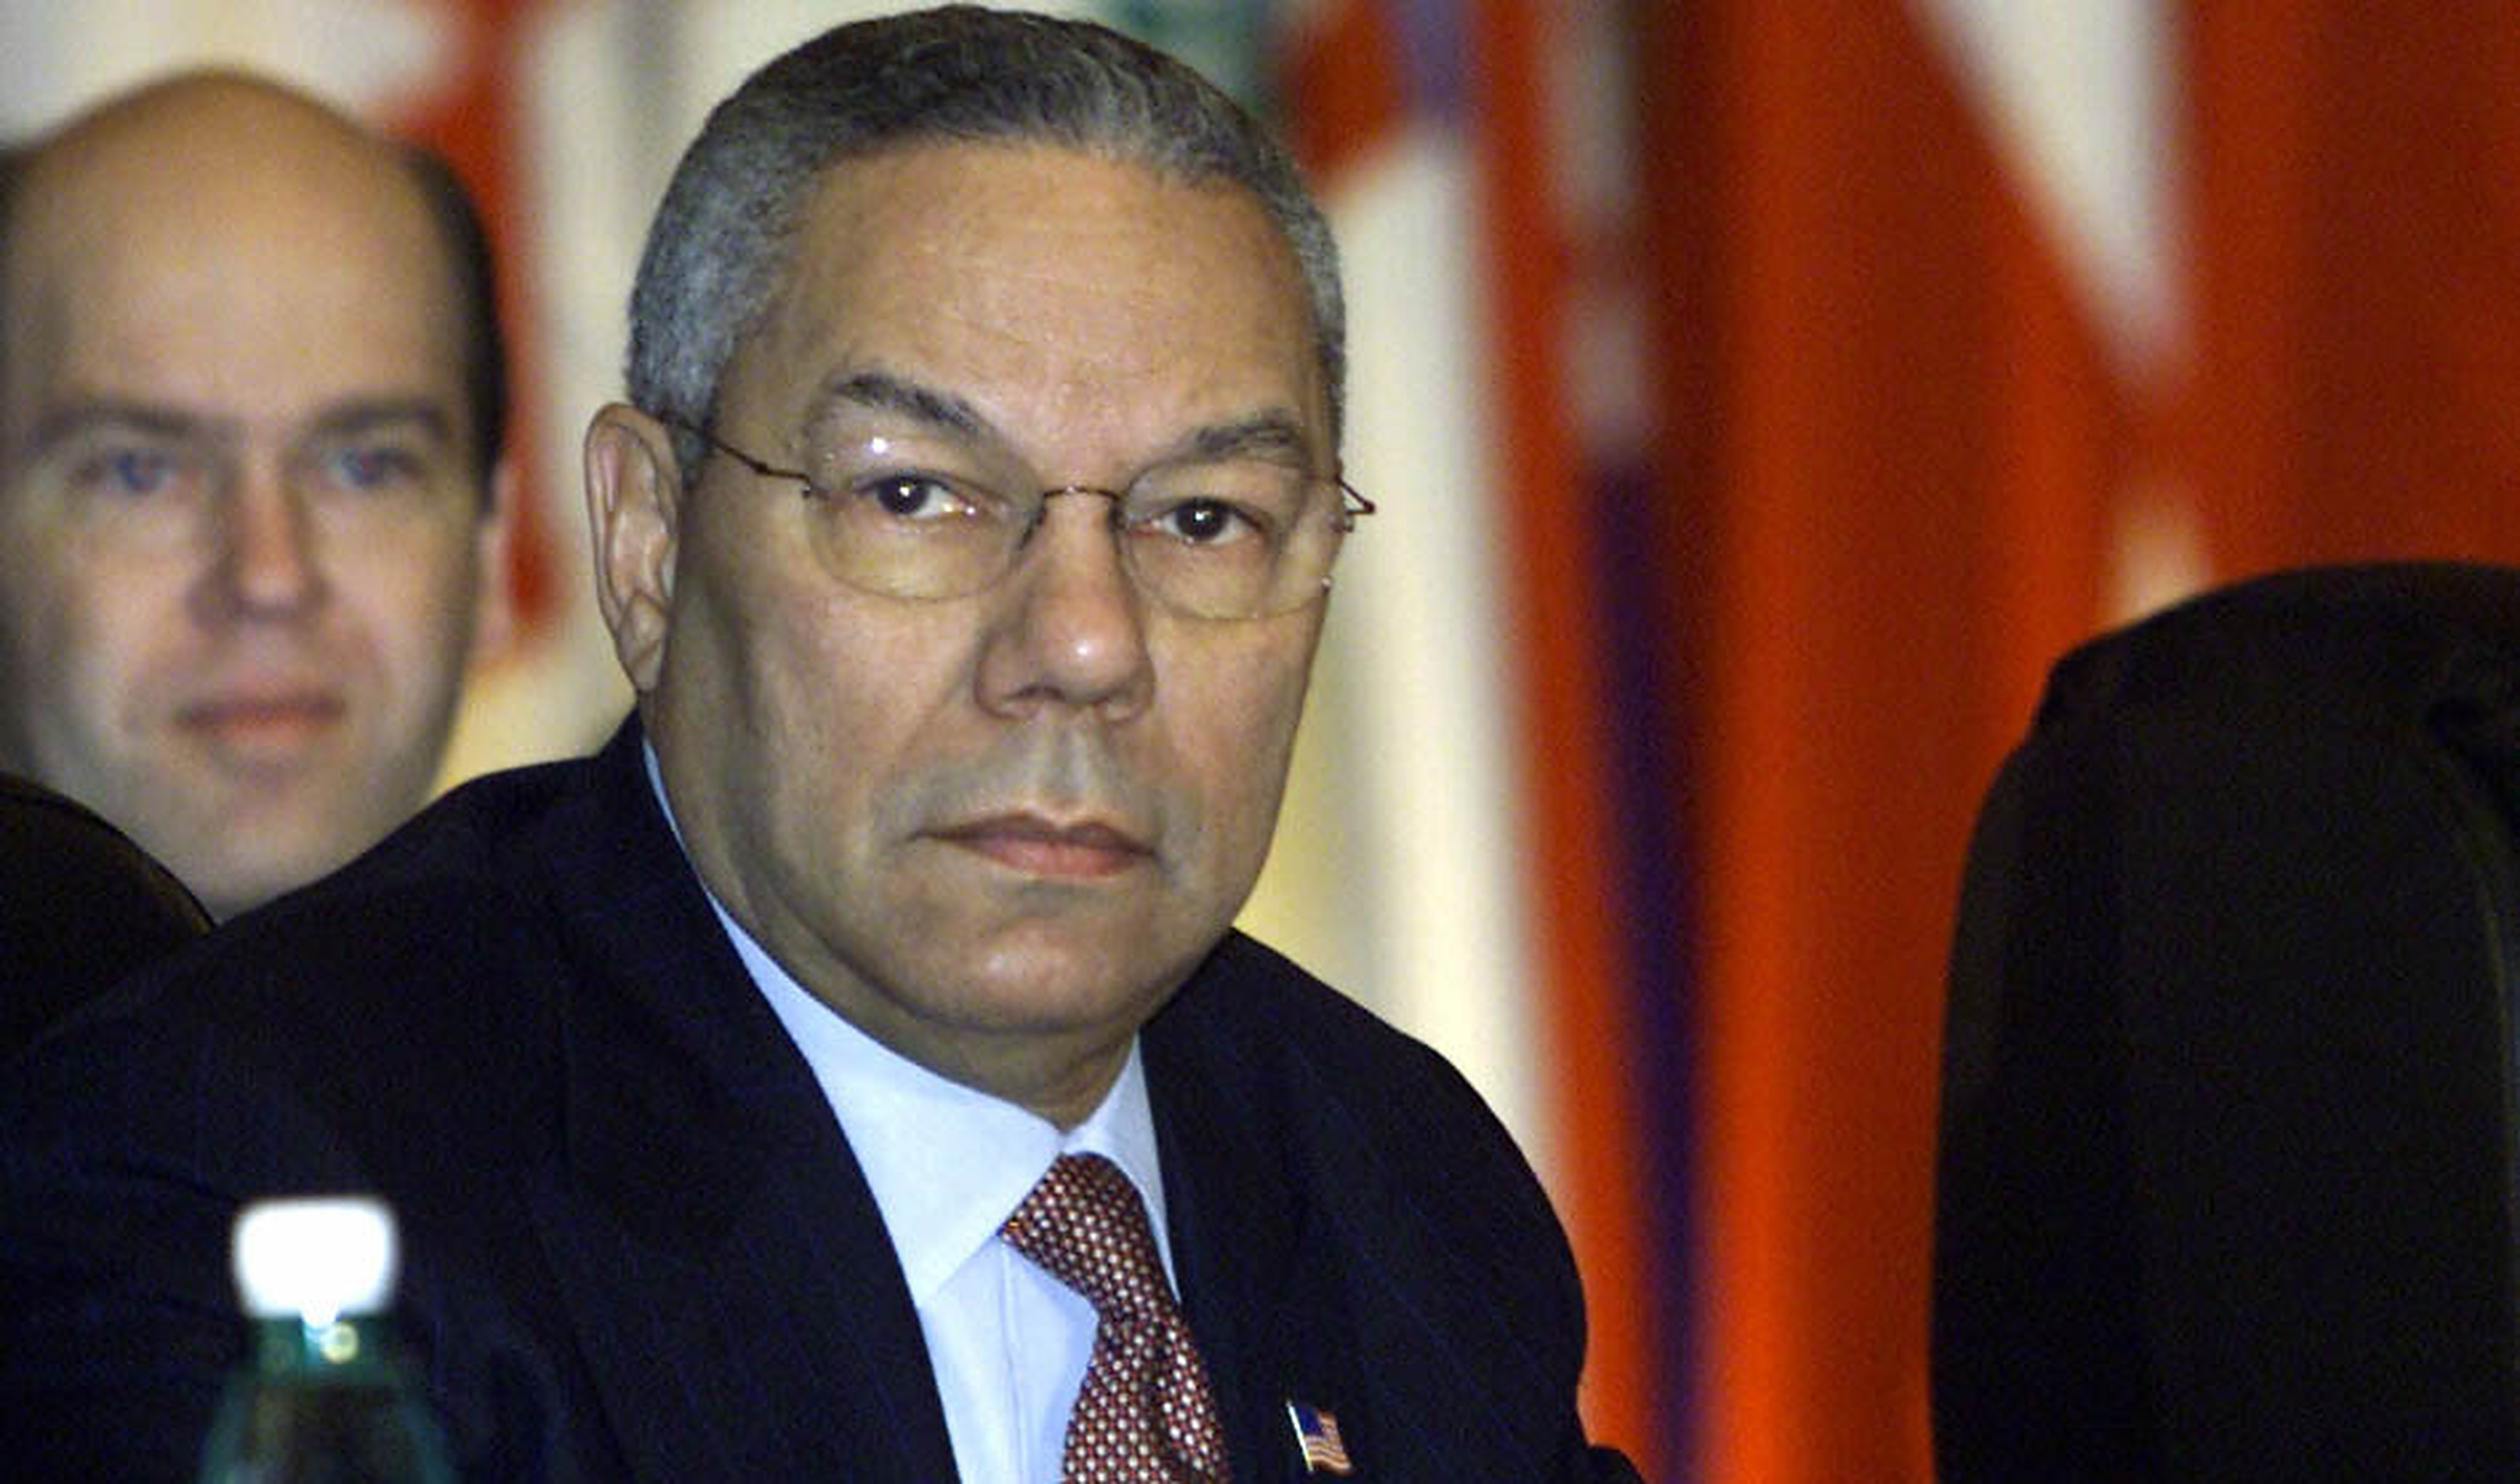 SUA| Fostul secretar de stat Colin Powell a decedat din cauza complicațiilor provocate de Covid-19. Era complet vaccinat